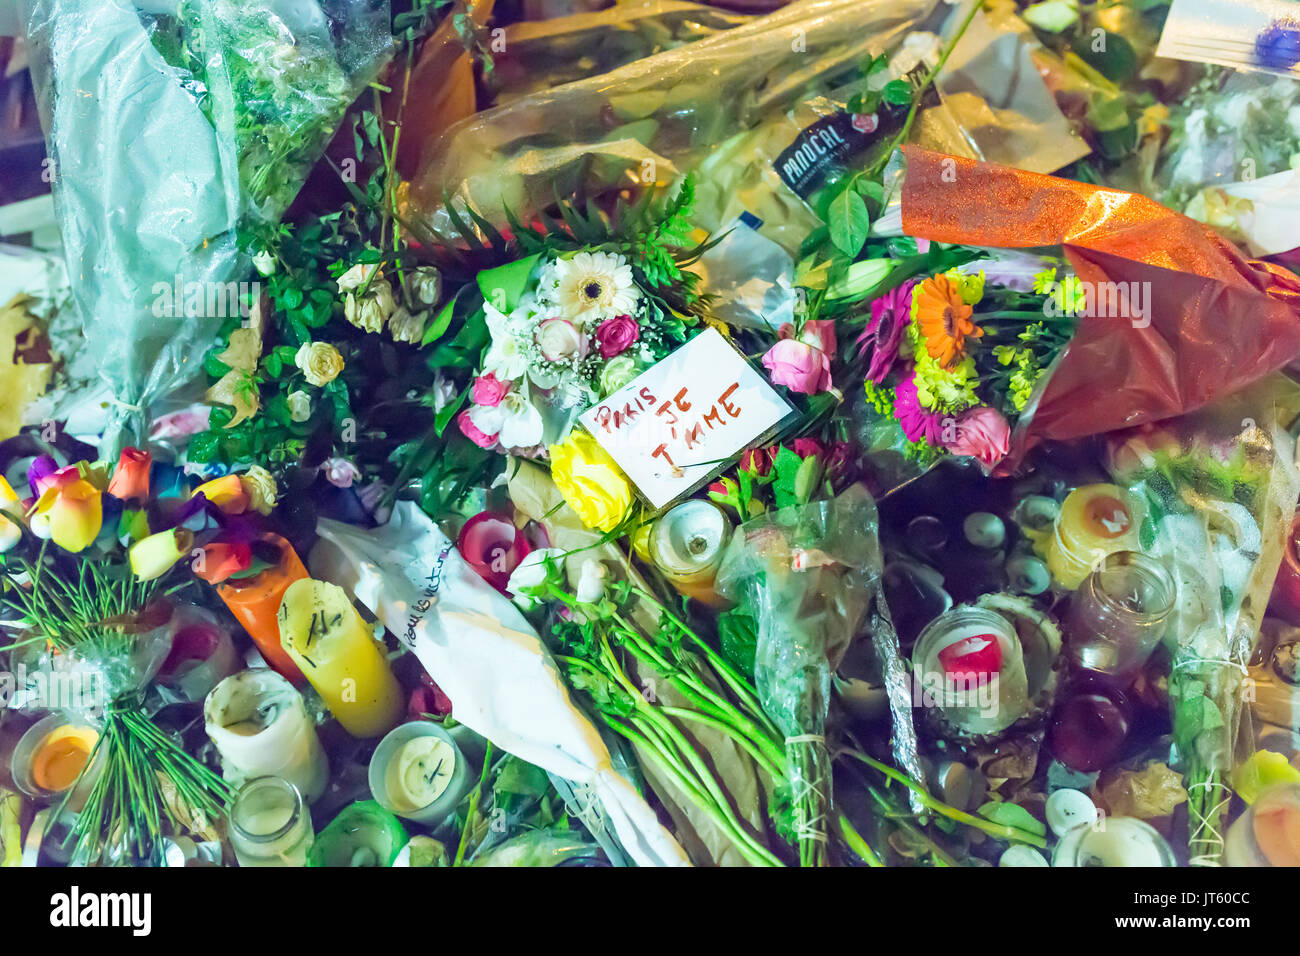 Paris je t'aime, Paris Ich liebe dich unter Blumen und Kerzen. Hommage an die Opfer der Terroranschläge in Paris, den 13. November 2015. Stockfoto